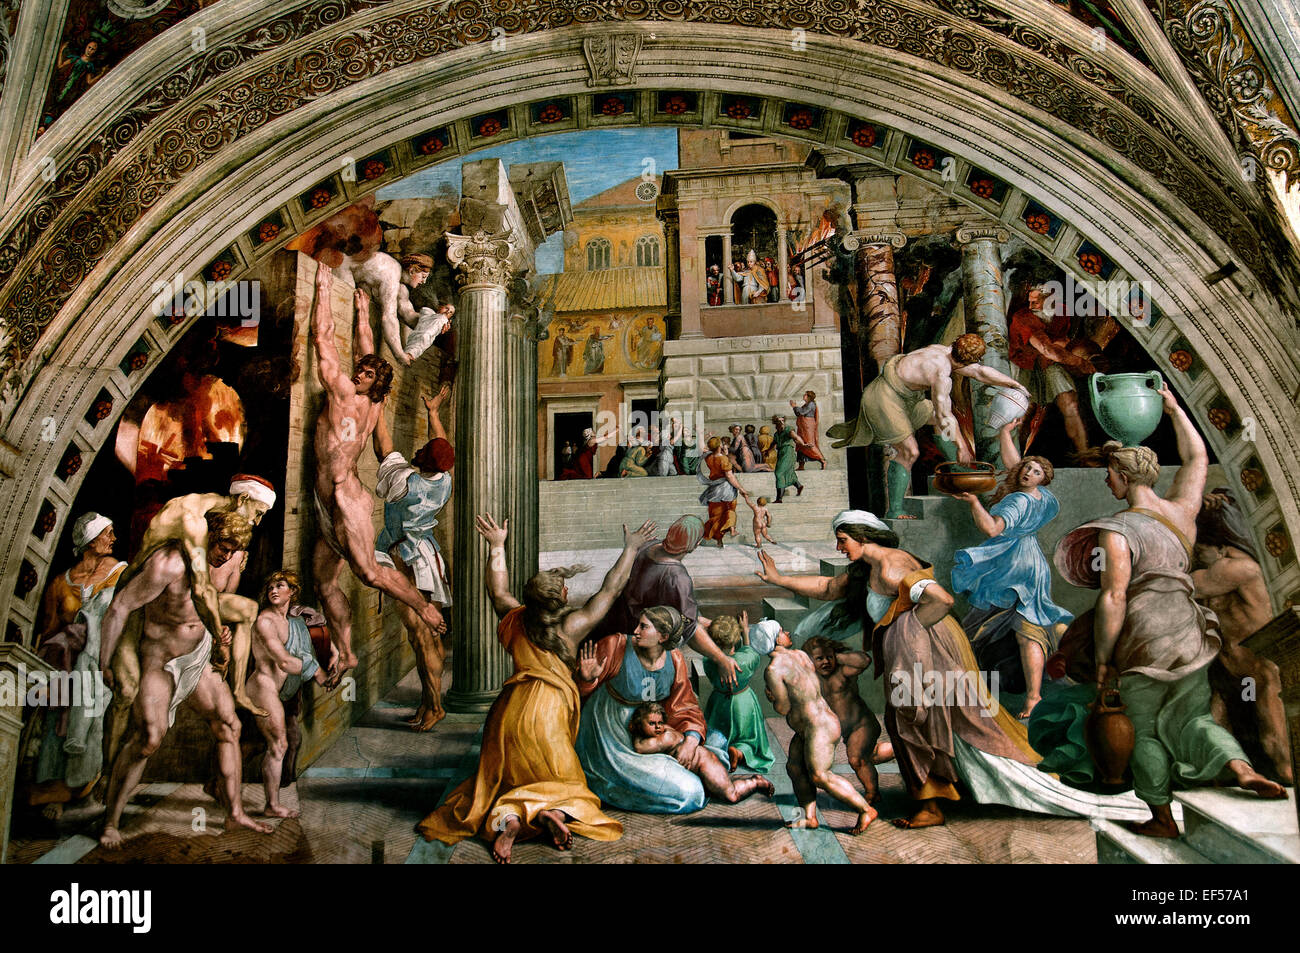 Das Feuer im Borgo 1514 das Feuer im Borgo-Raffael (Tanze di Raffaello) päpstlichen Gemächer Vatikan Rom Italien (Raffaello Sanzio da Urbino 1483-1520 Raphael genannt) das Fresko wurde wahrscheinlich von seinem Assistenten Giulio Romano gemalt Stockfoto